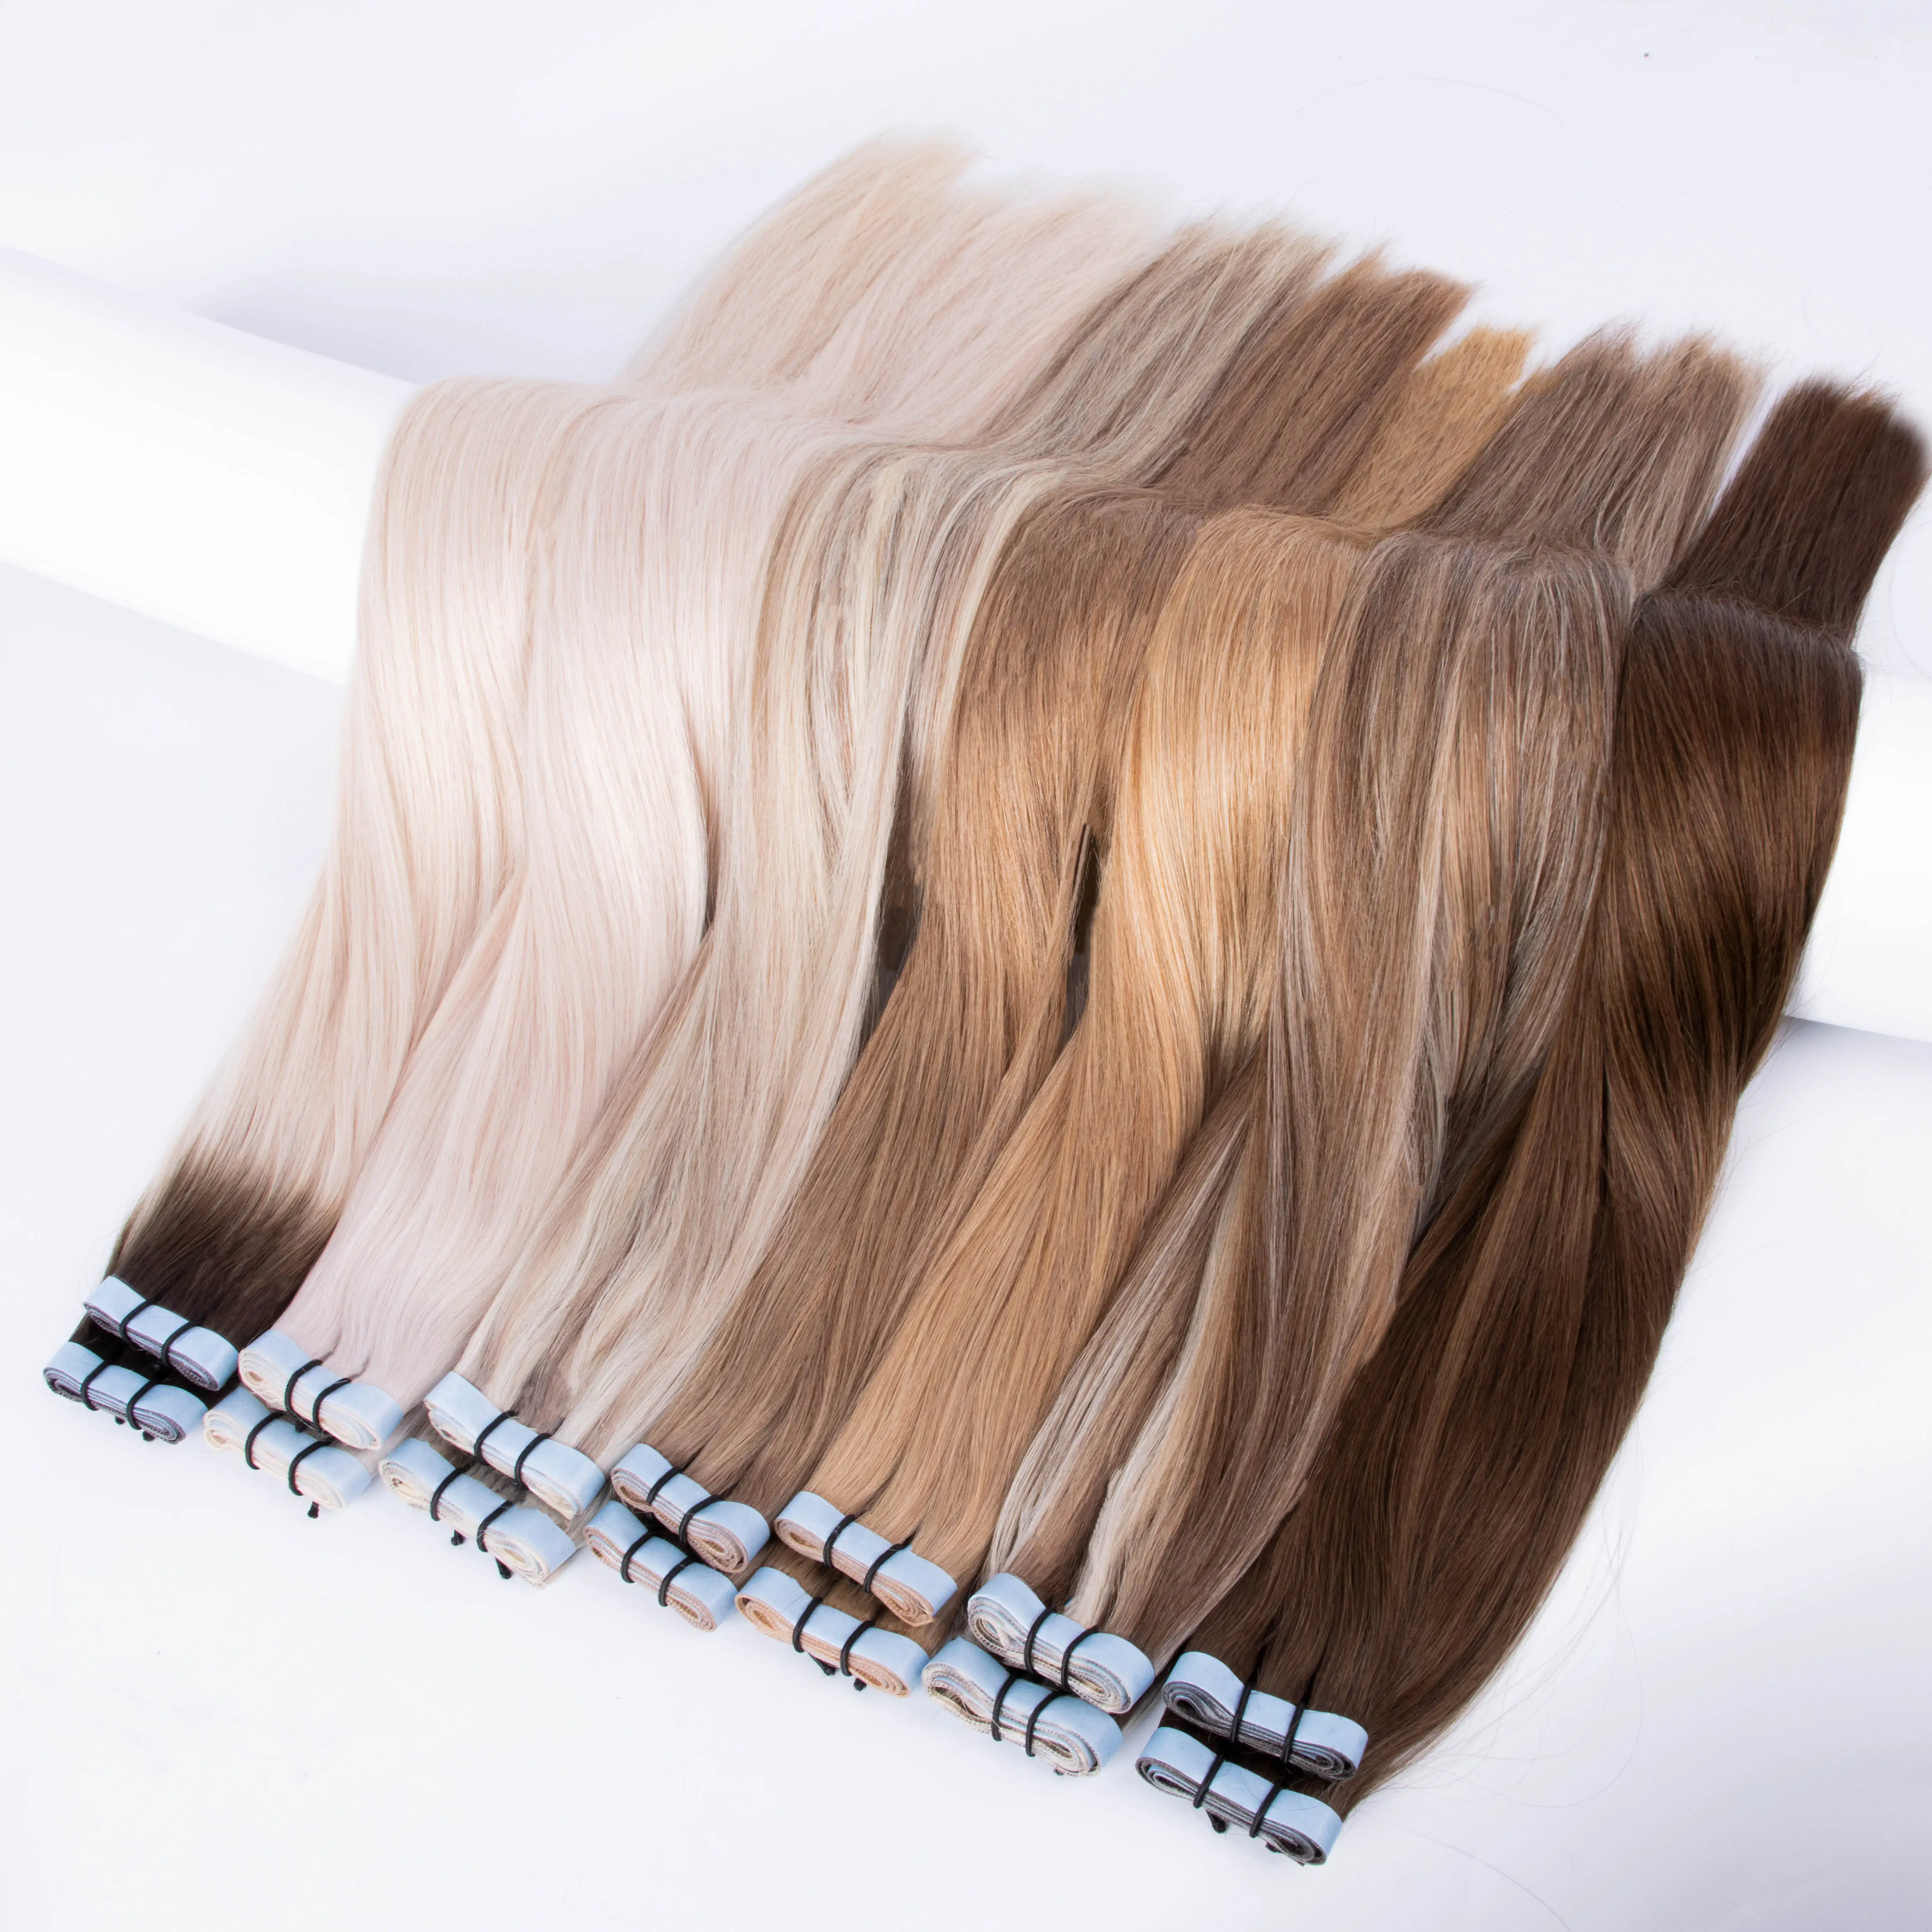 नए कुंवारी अदृश्य टेप बालों को बेकार कर रहे हैं अदृश्य टेप विस्तार मानव बाल